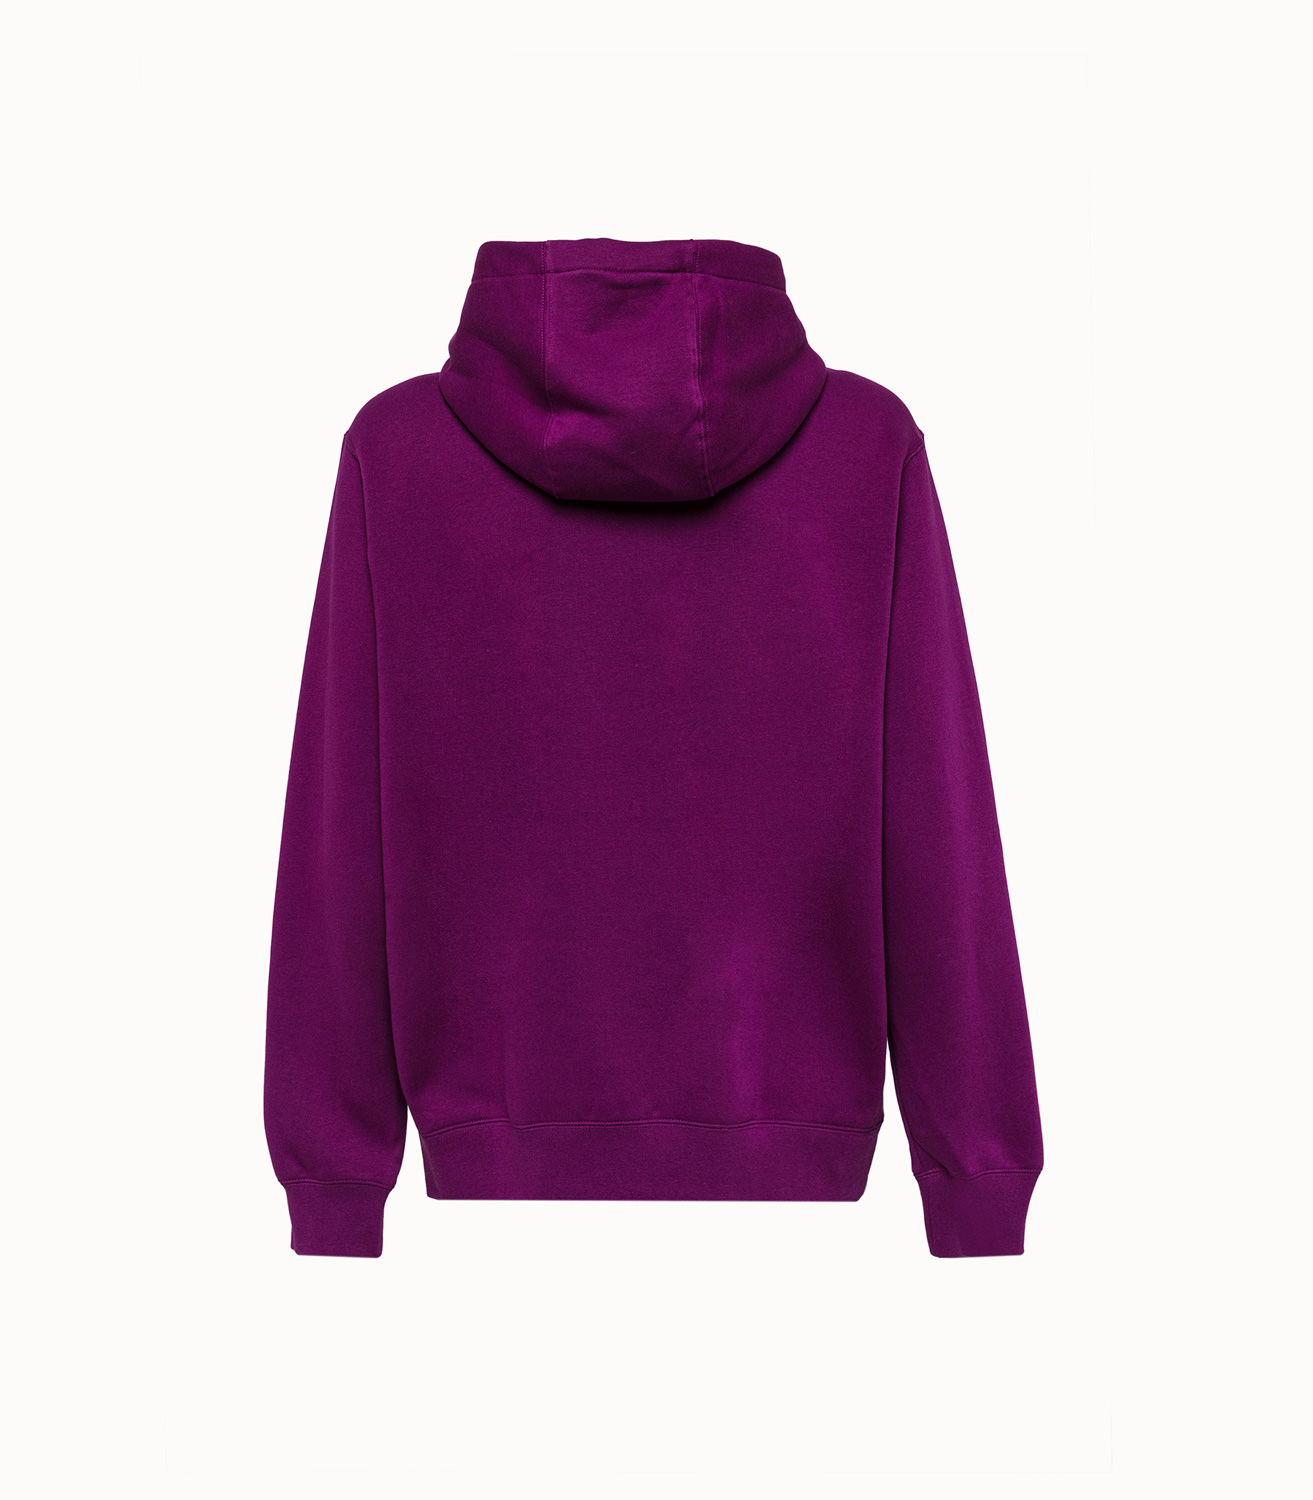 nike solid color hoodies